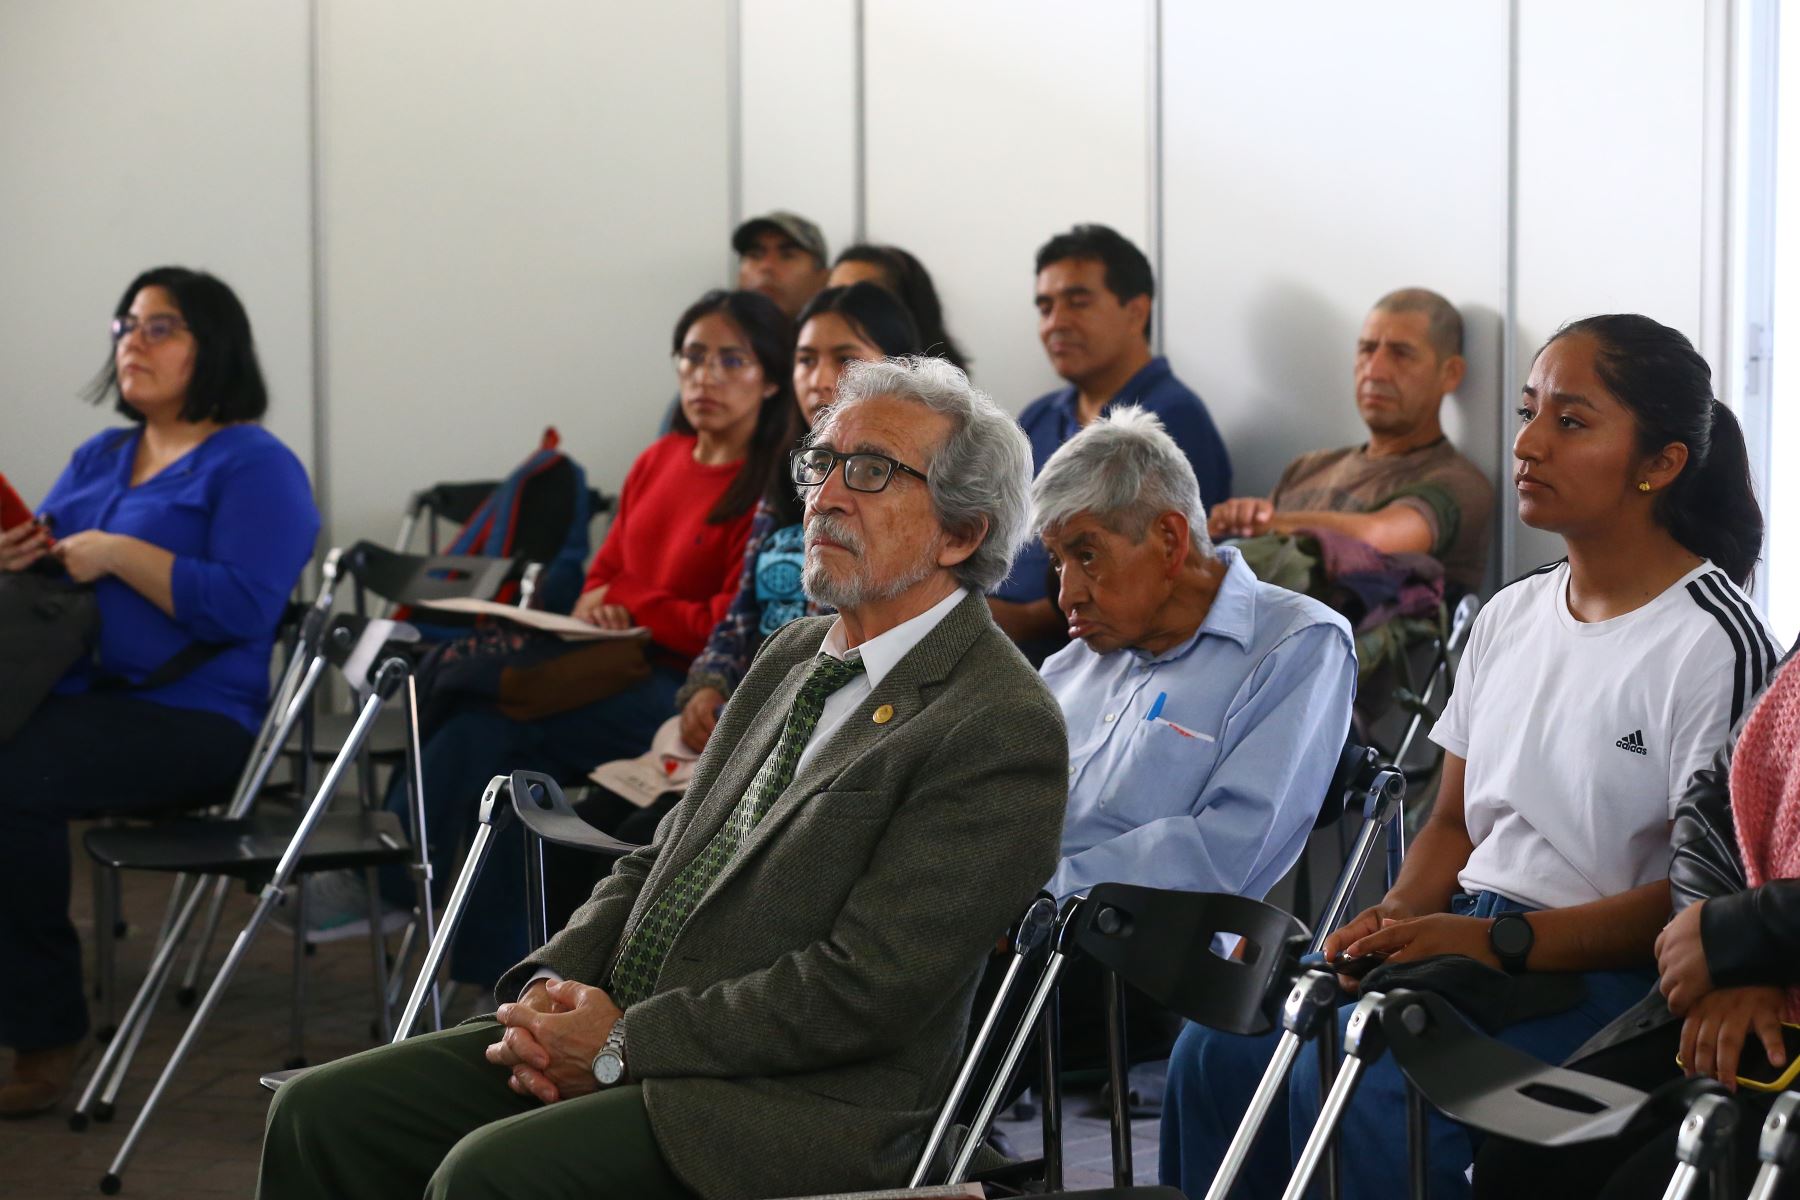 El público participó  en el conversatorio "El Peruano: Rumbo al Bicentenario" que se realizó en la Feria del Libro Ricardo Palma.
Foto: ANDINA/ Eddy Ramos